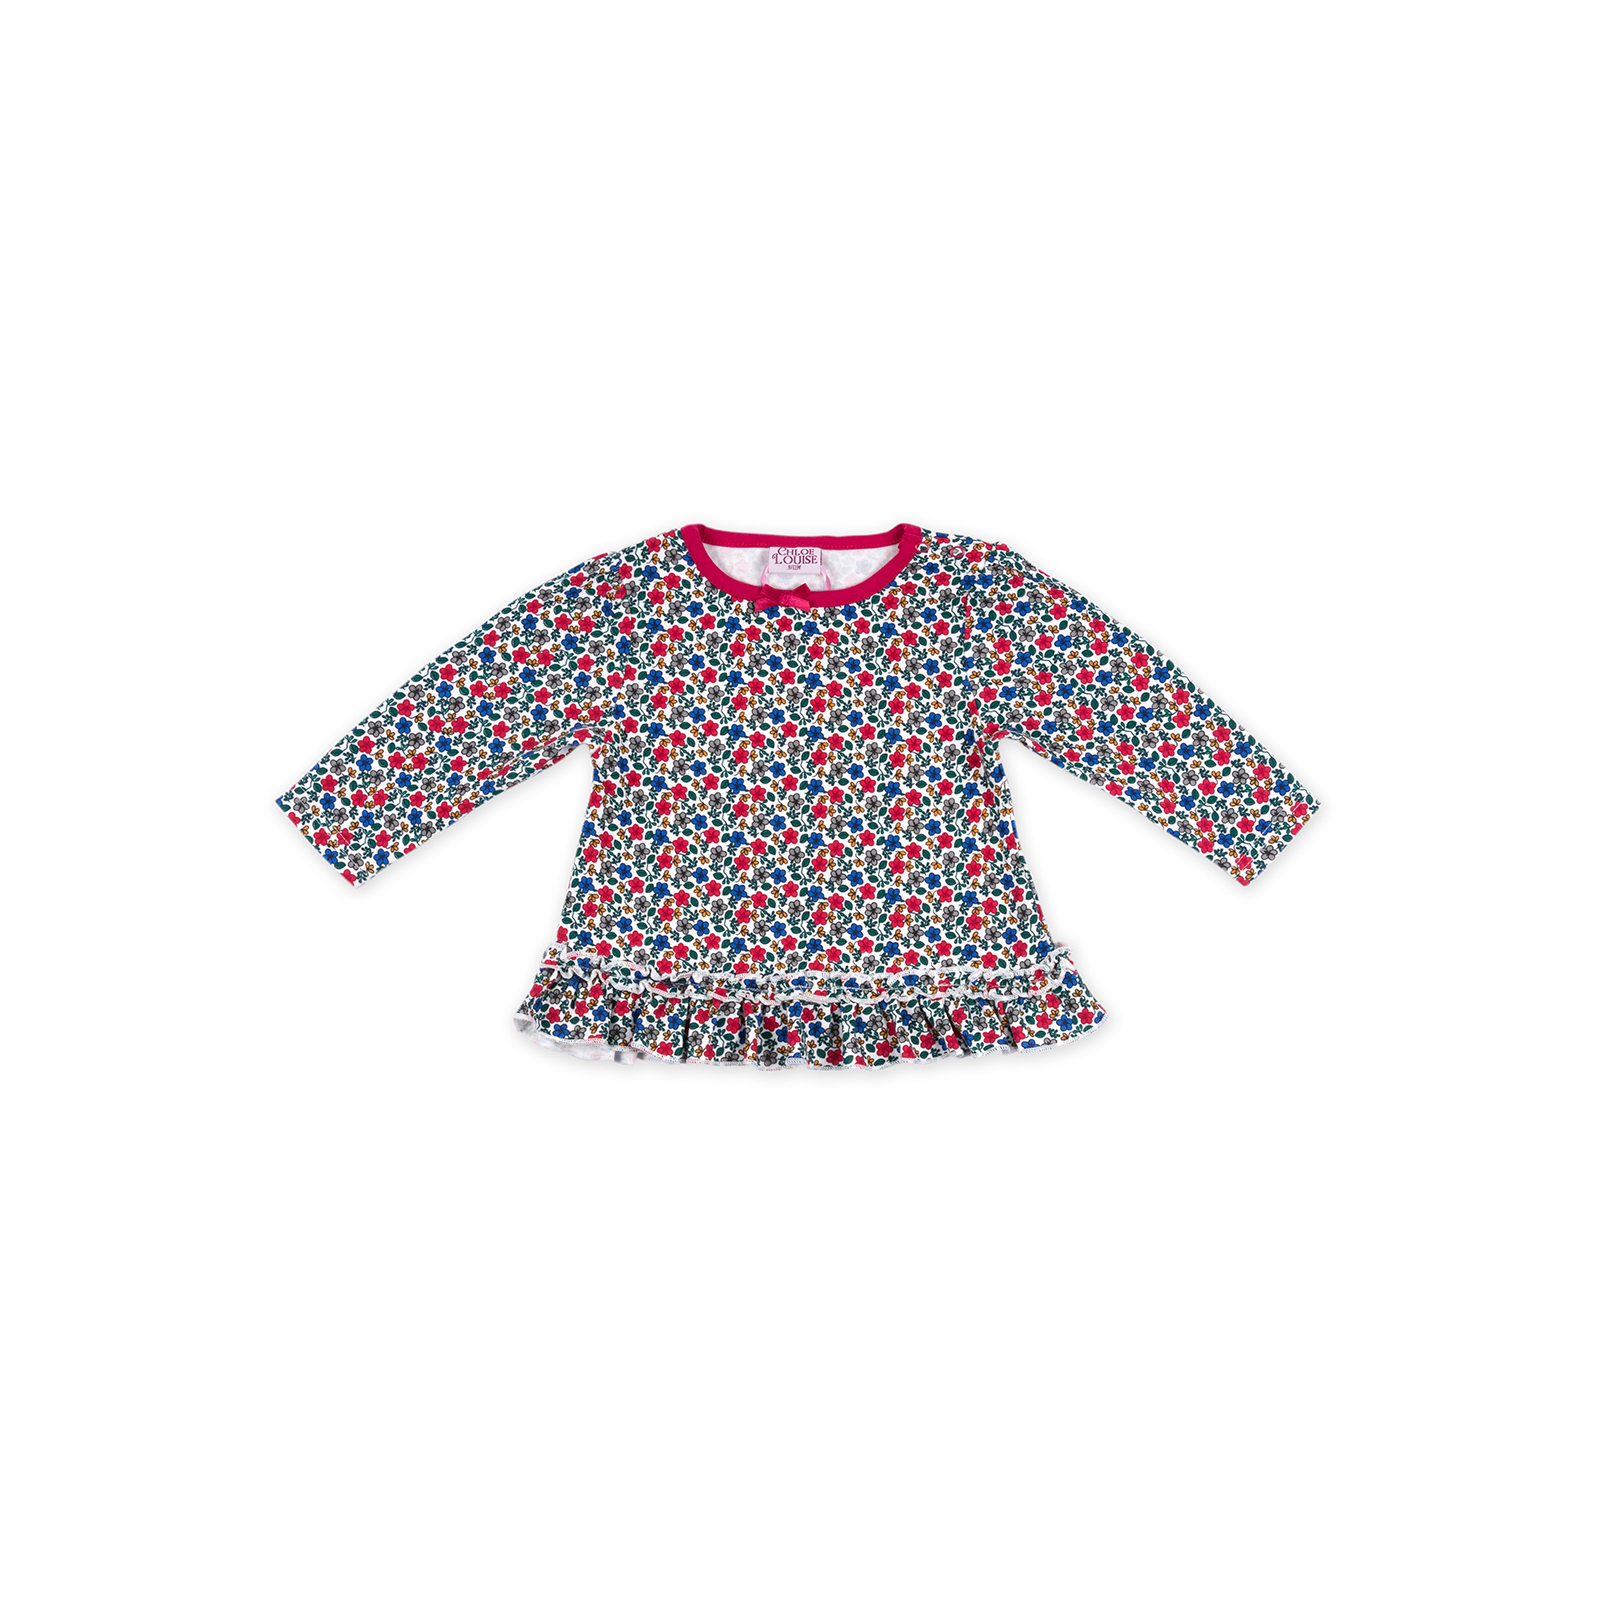 Набір дитячого одягу Luvena Fortuna для девочек: кофточка, красные штанишки и меховая жилетка (G8070.9-12) зображення 2